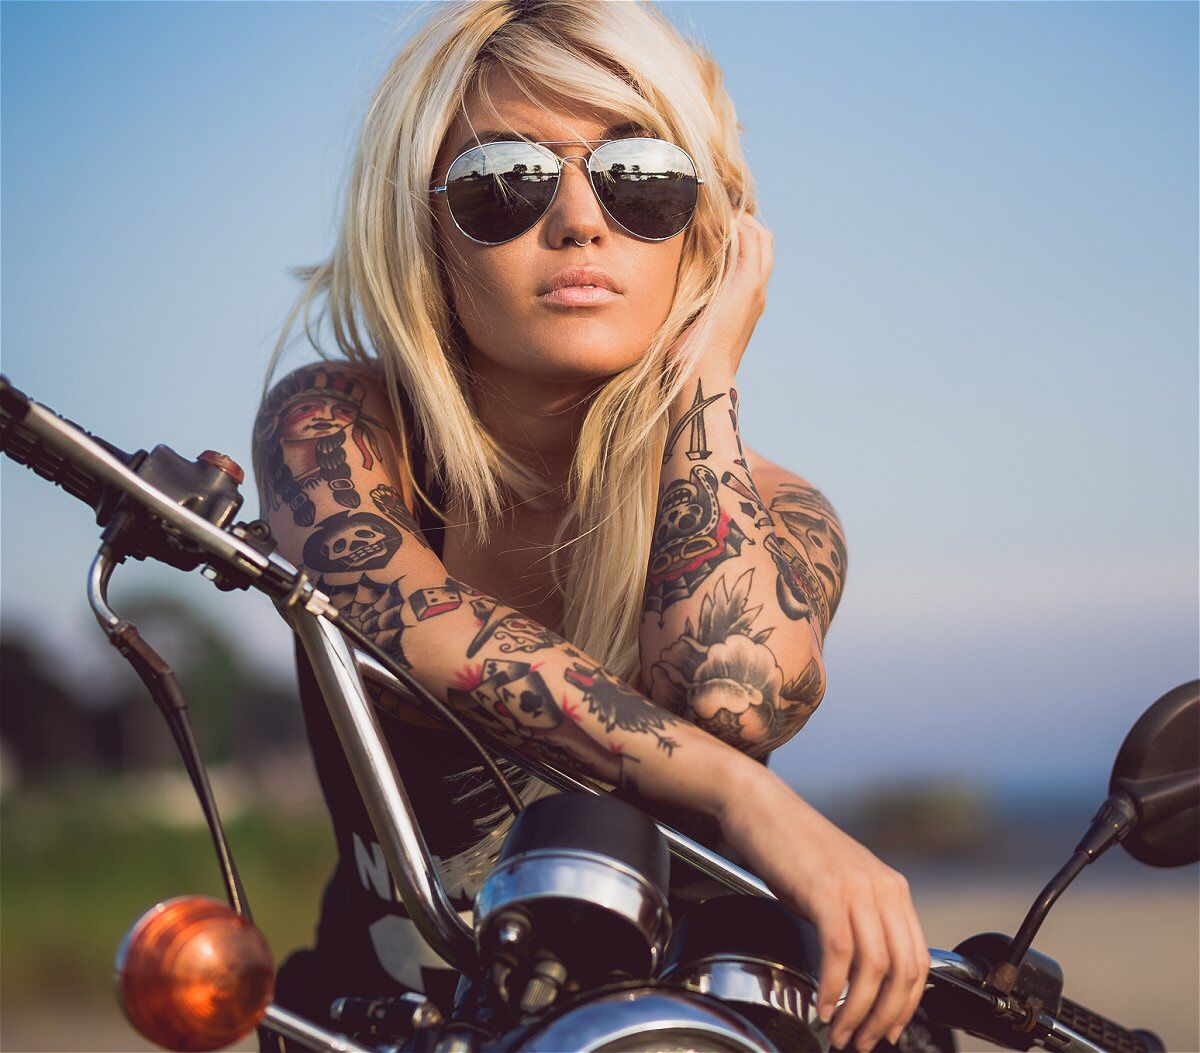 Sådan vælger du en online Dating Brugernavn på en motorcykel Biker Dating Webstedet